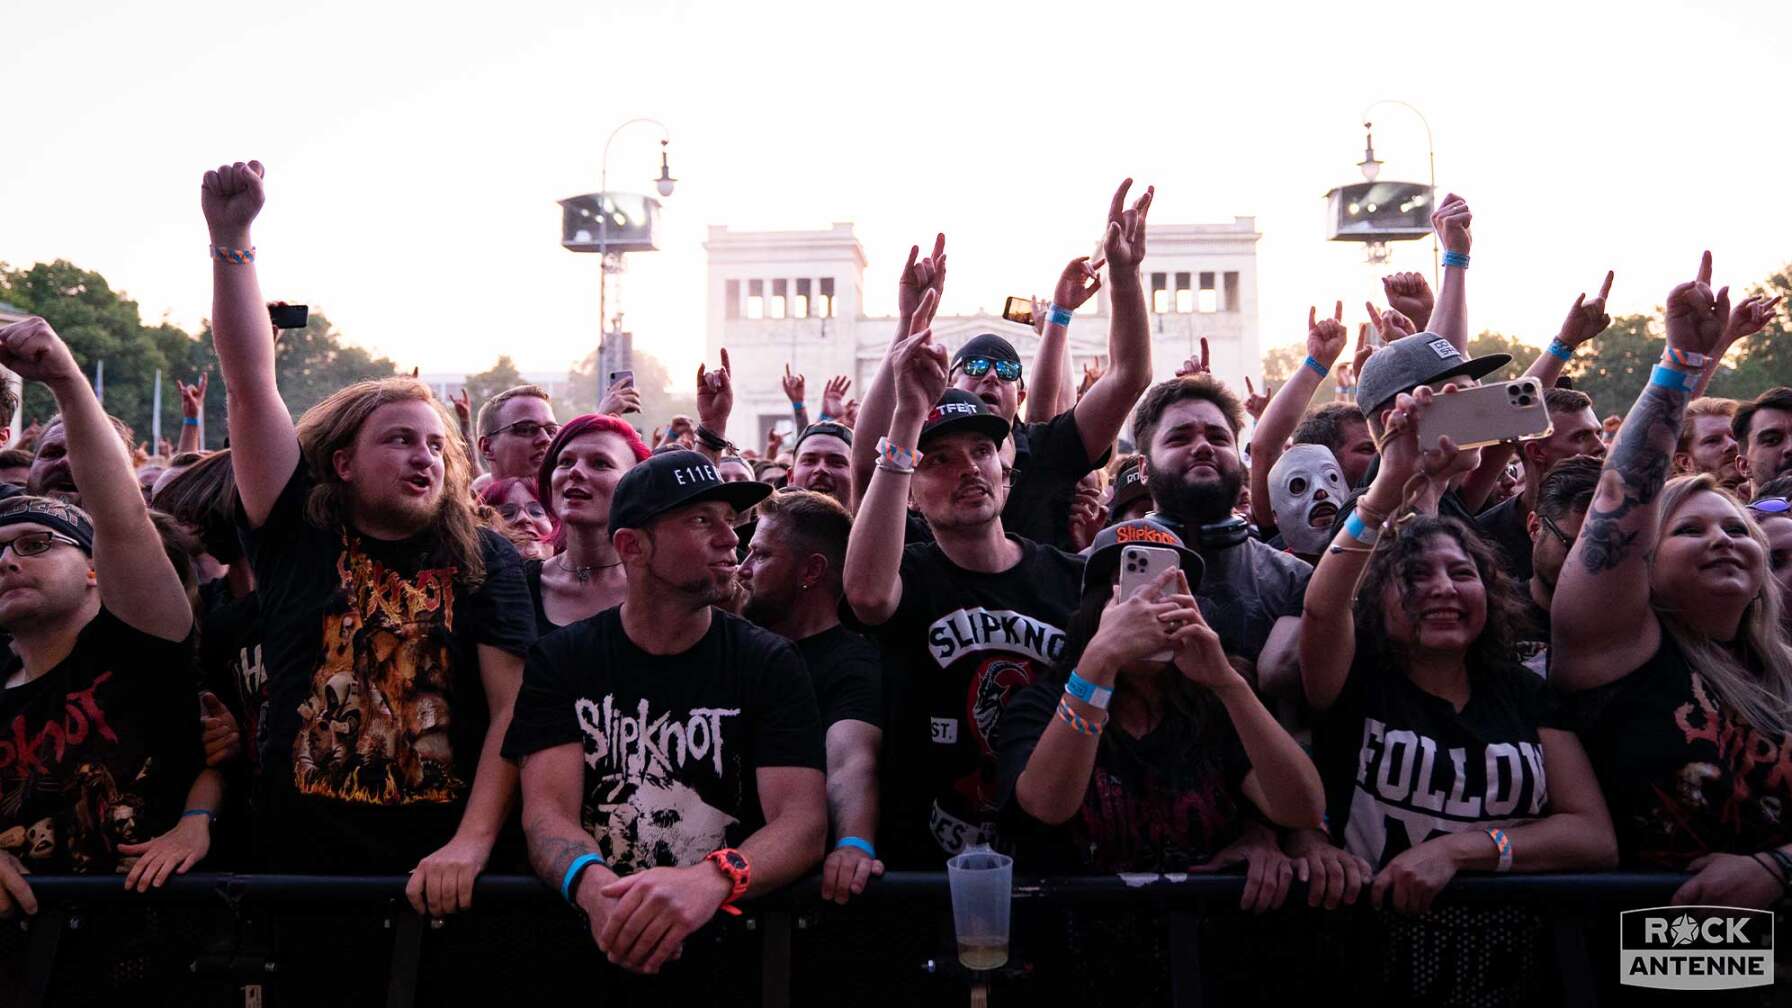 Bilder vom Slipknot Konzert am 24.06.23 in München